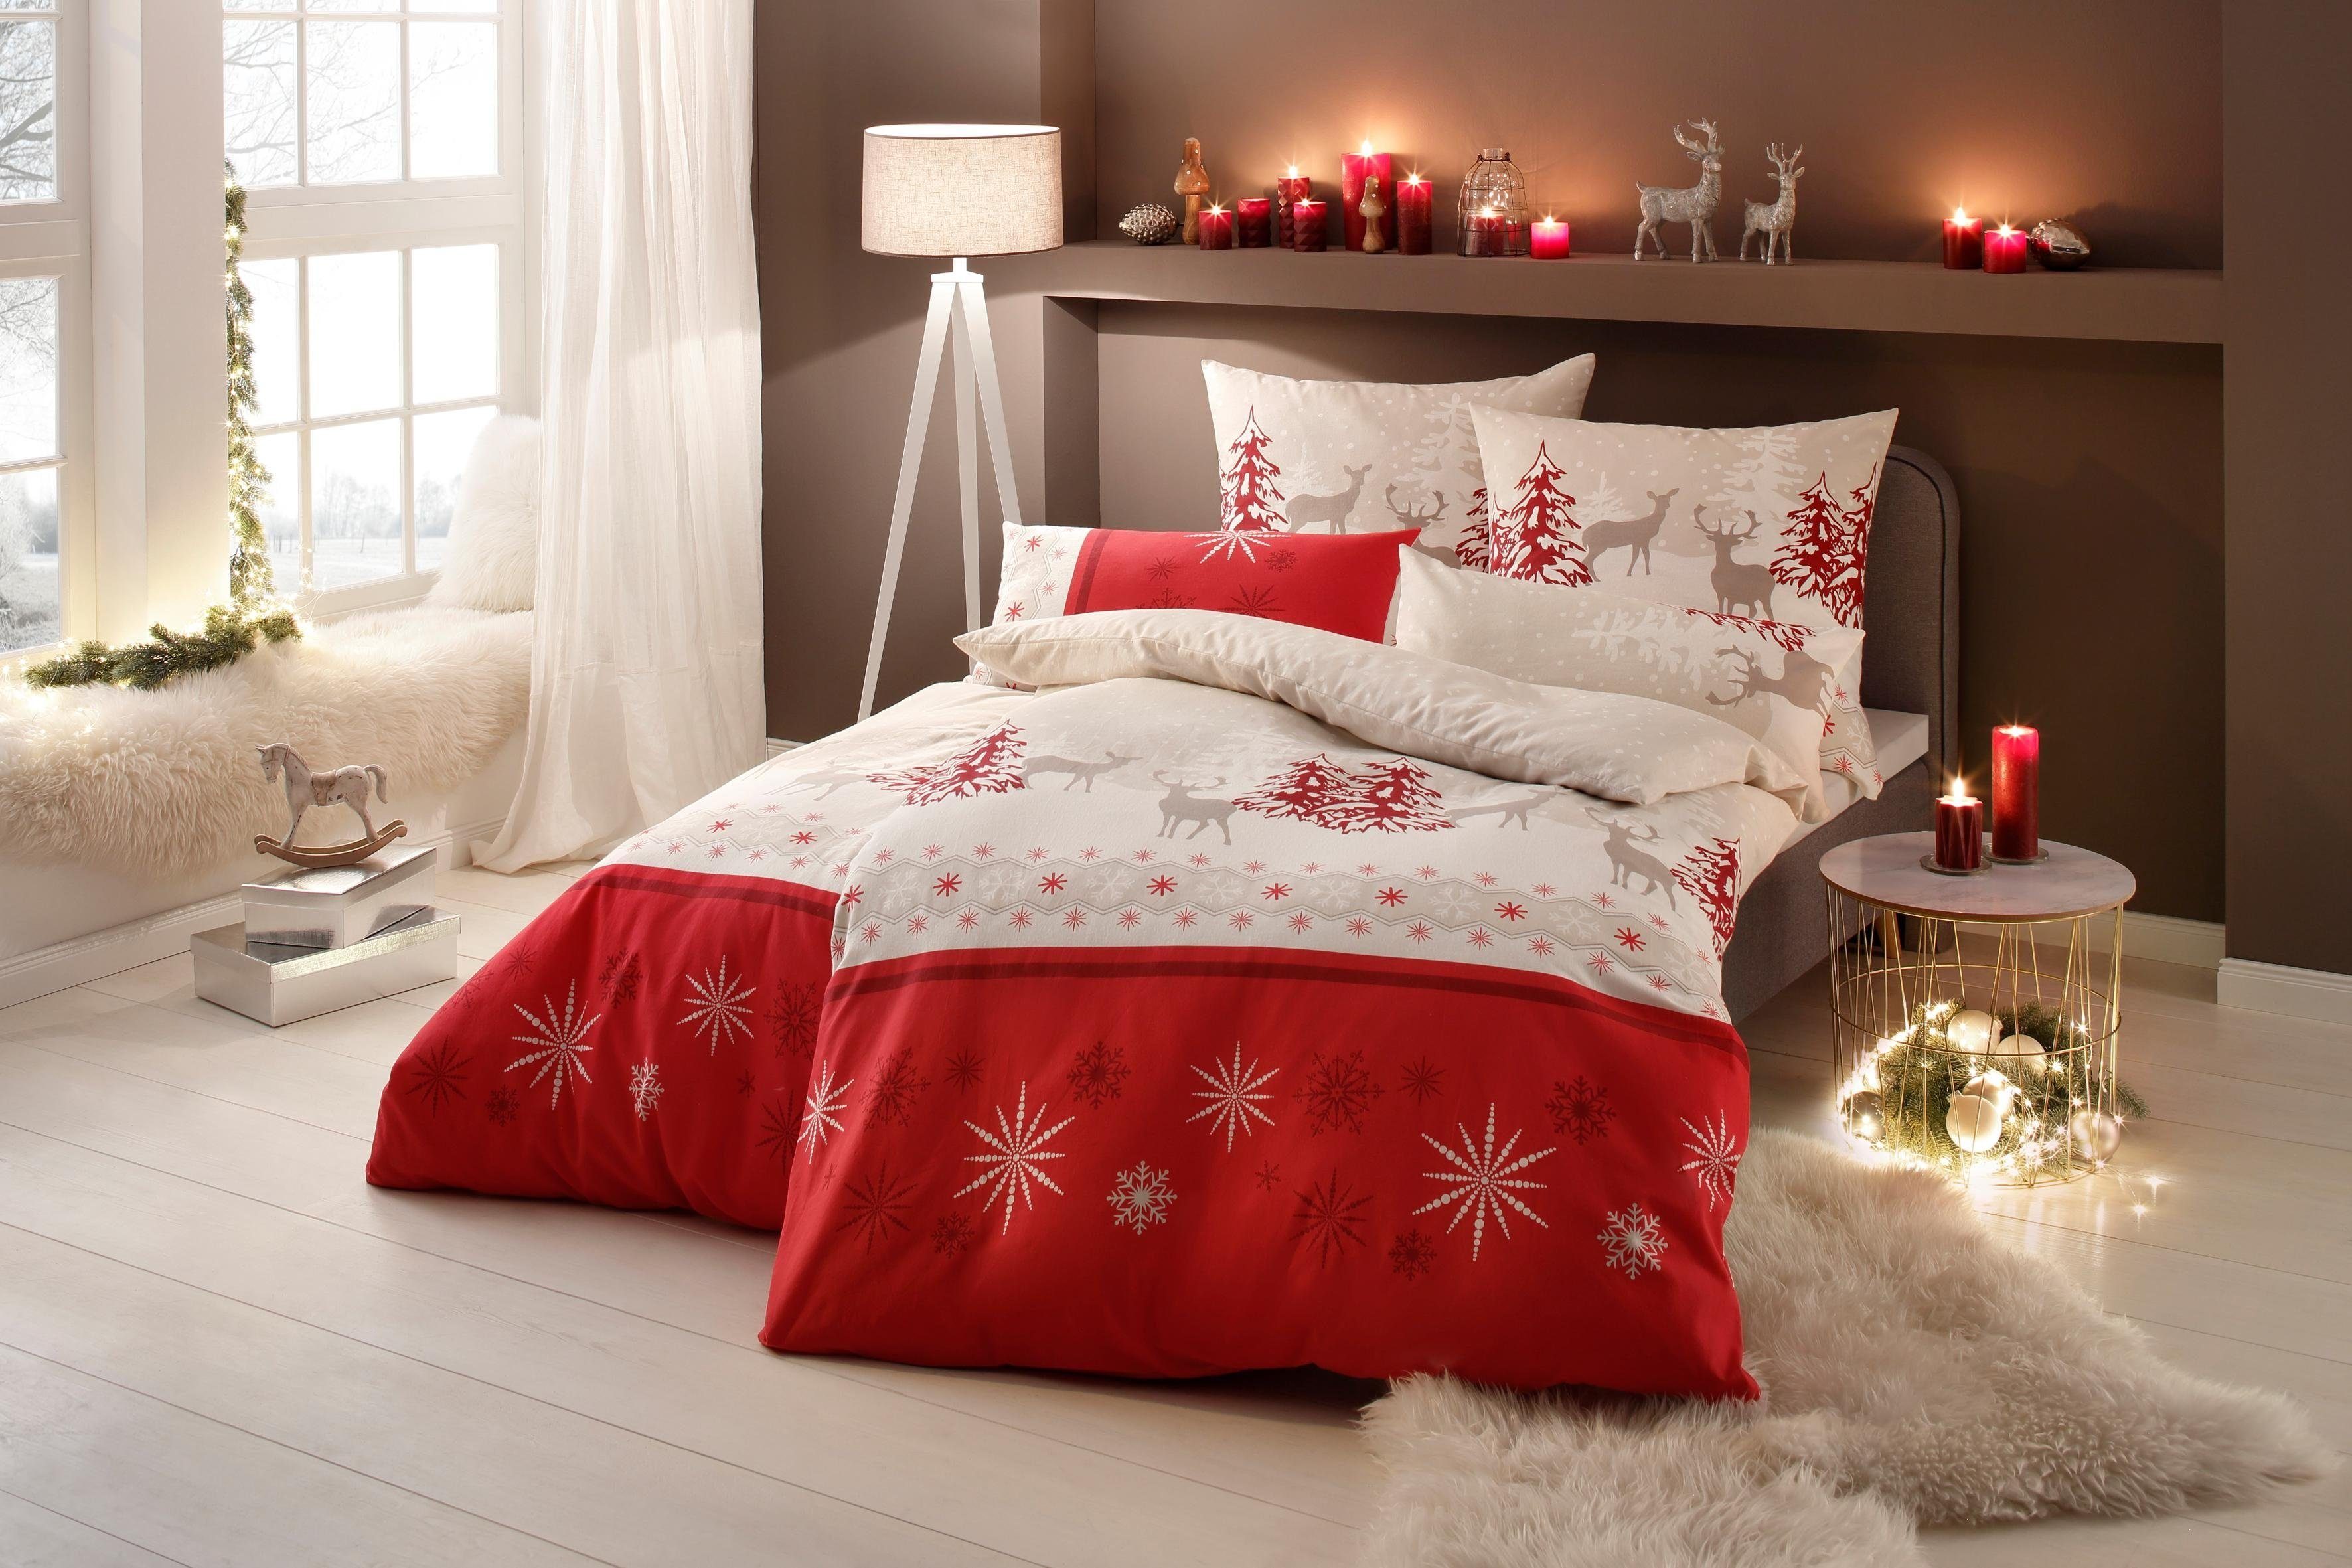 cm, Bettwäsche Venua rot/beige Weihnachtsbettwäsche 2 teilig, oder home, Linon, in 155x220 Gr. my Winterbettwäsche, 135x200